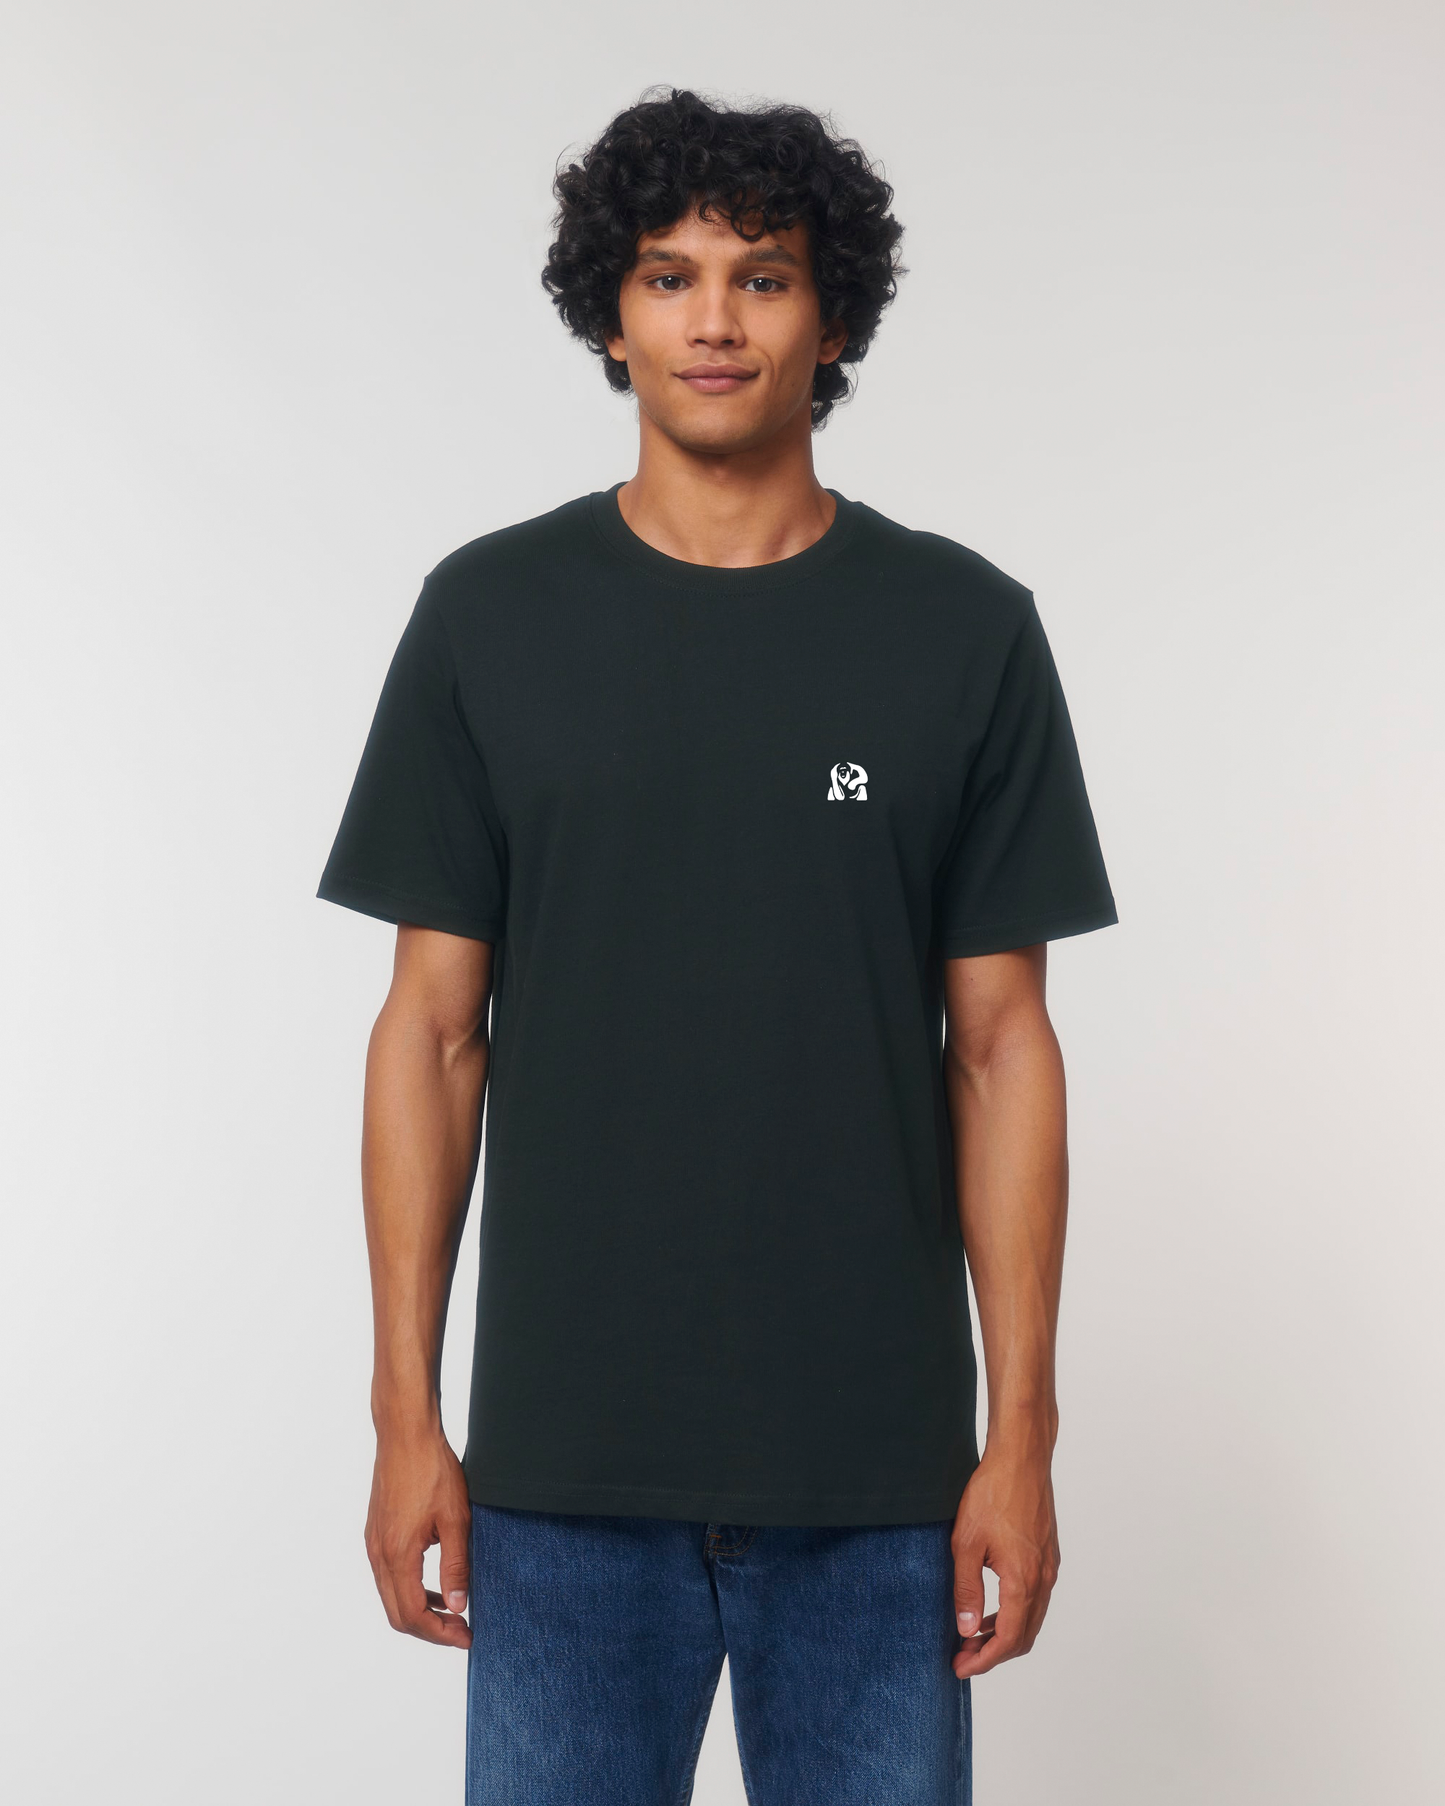 T-shirt épais unisexe en coton bio - Sumatra